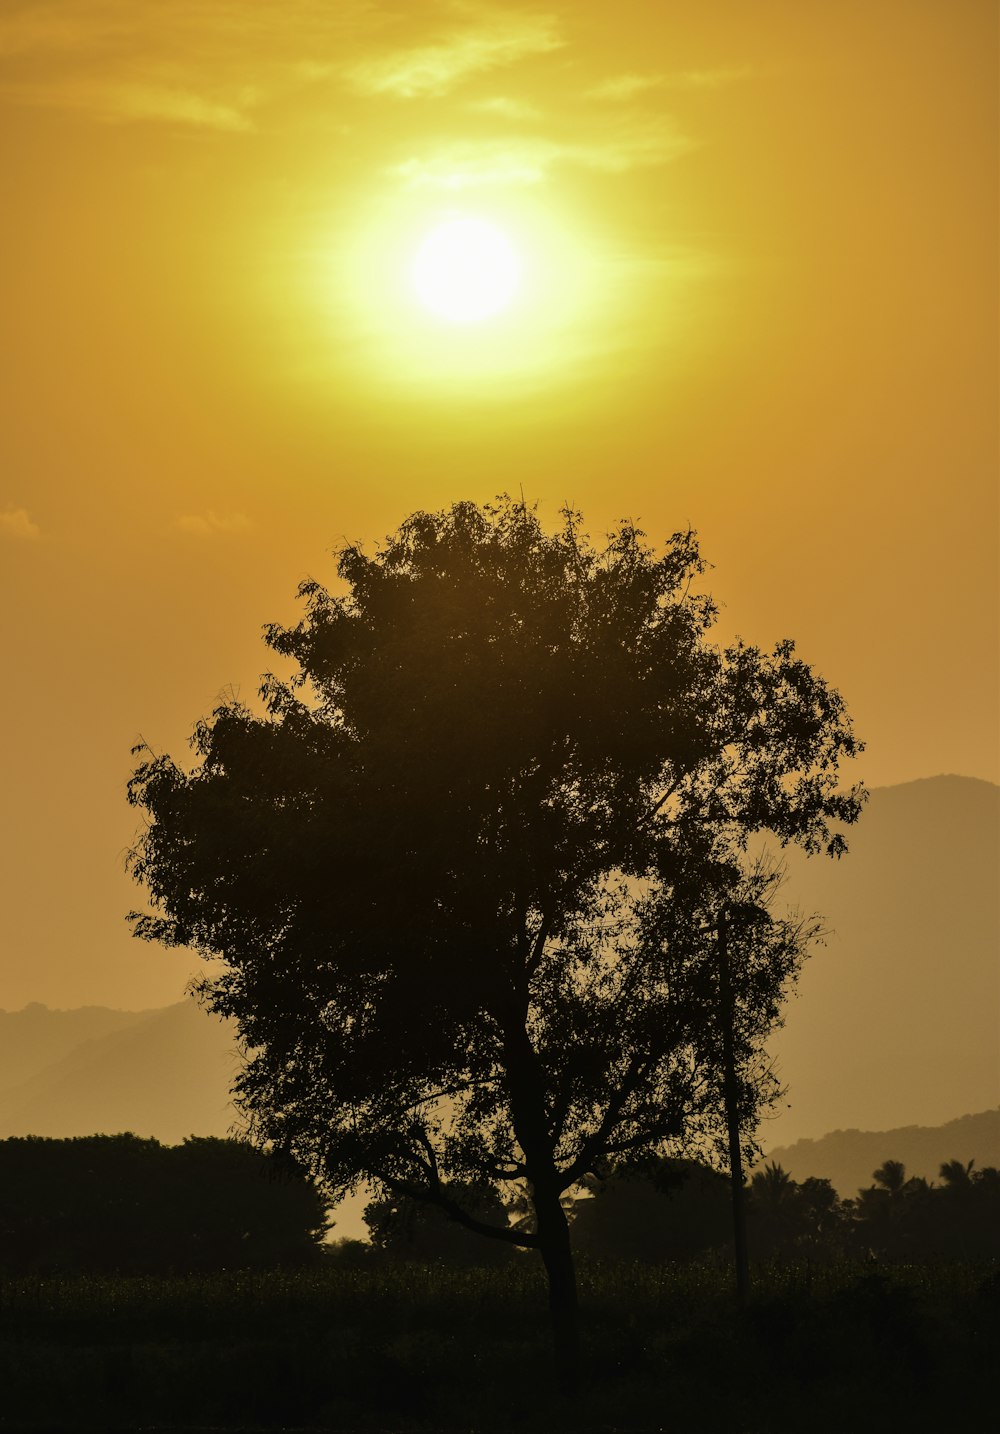 Un arbre solitaire se dessine contre le soleil couchant